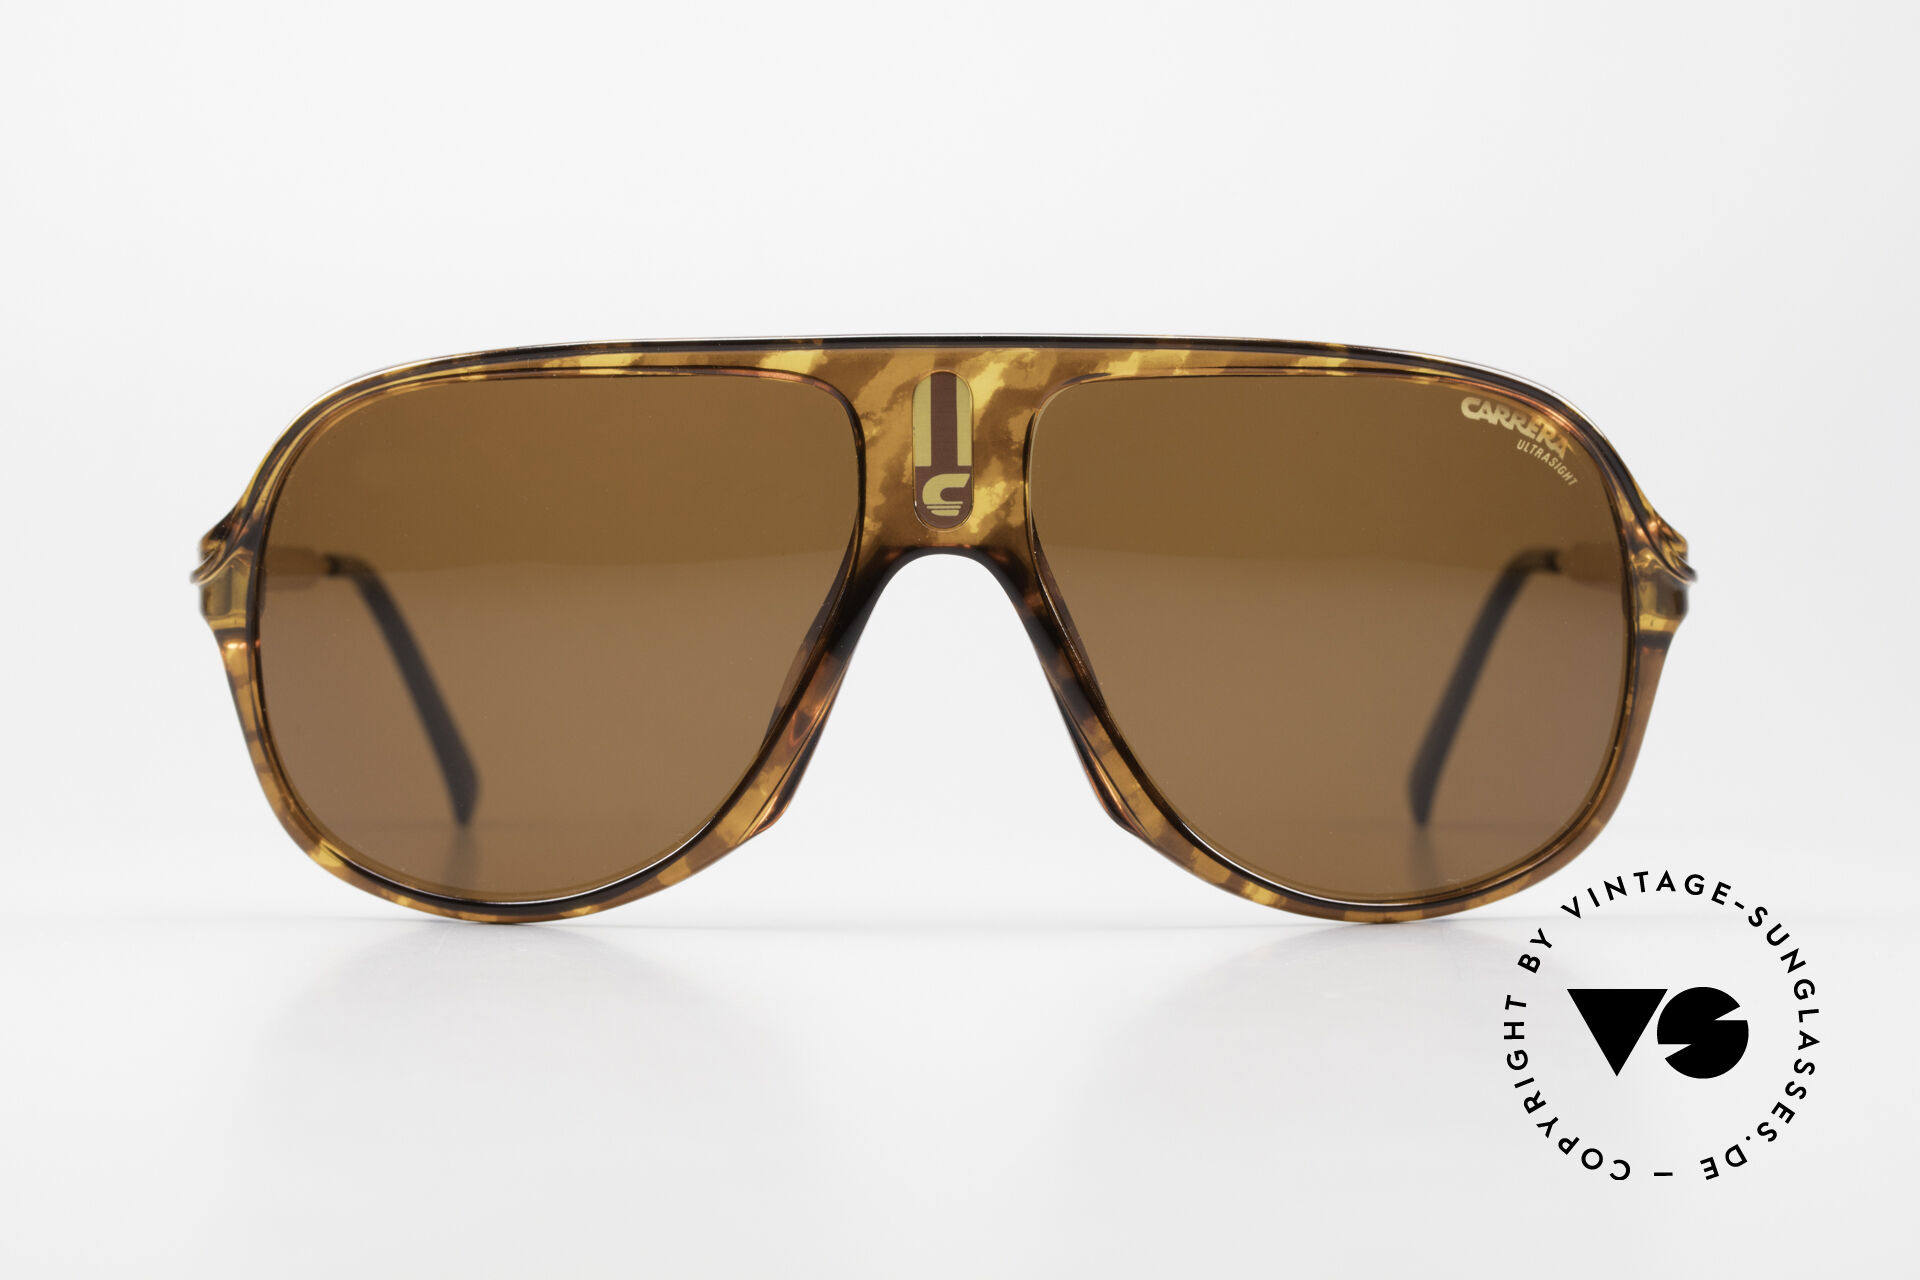 Sunglasses Carrera 5547 Dark Ultrasight Sun Lenses